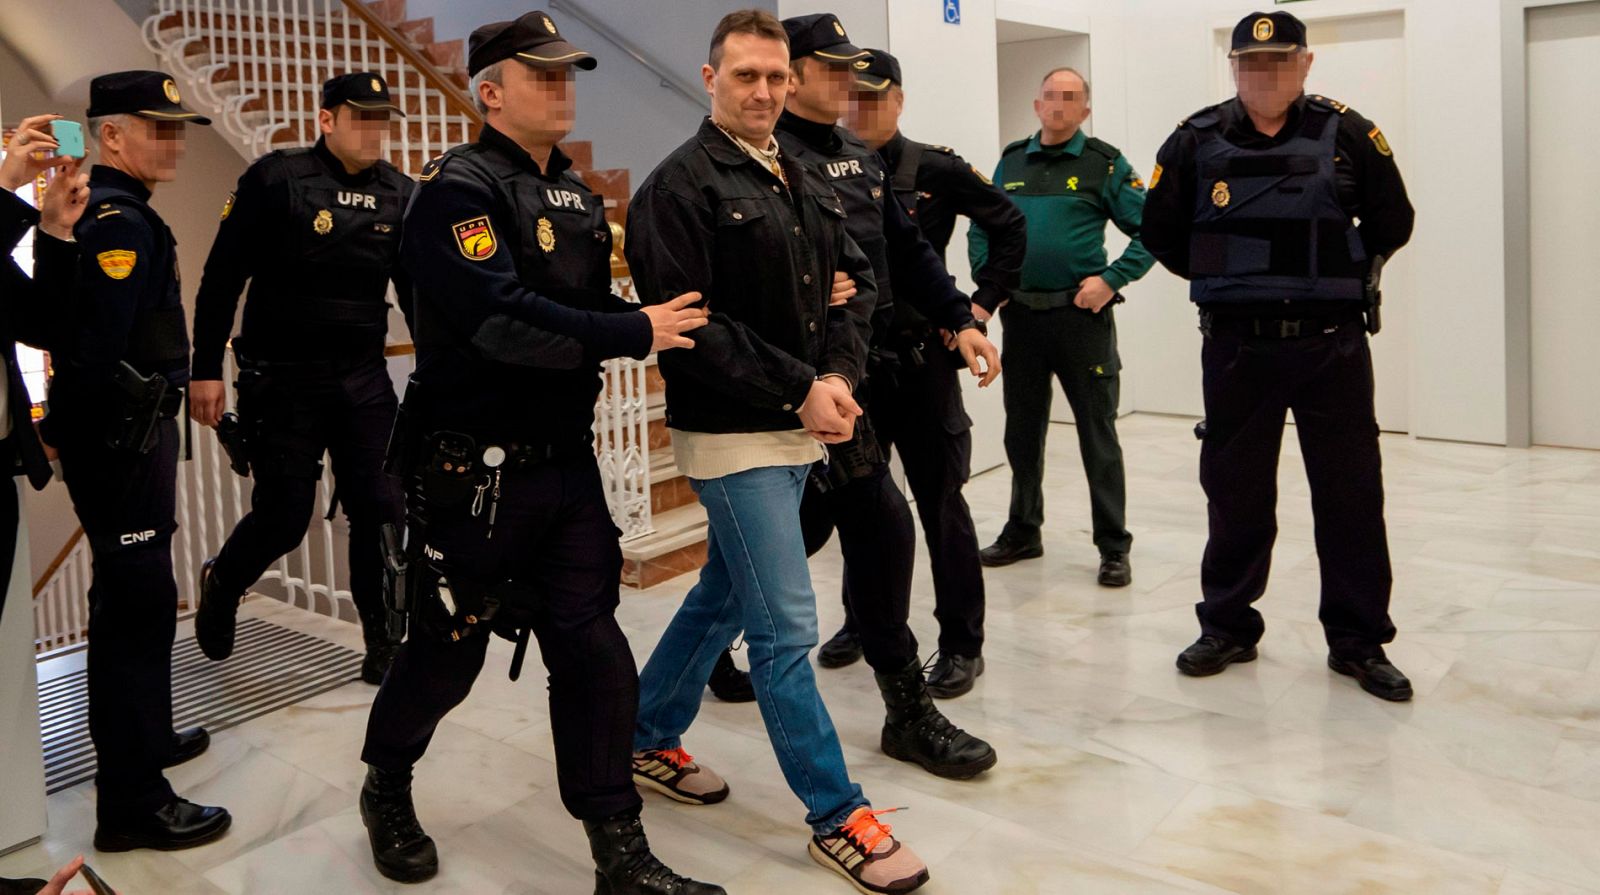 Comienza en Teruel el juicio contra 'Igor el ruso' entre fuertes medidas de seguridad